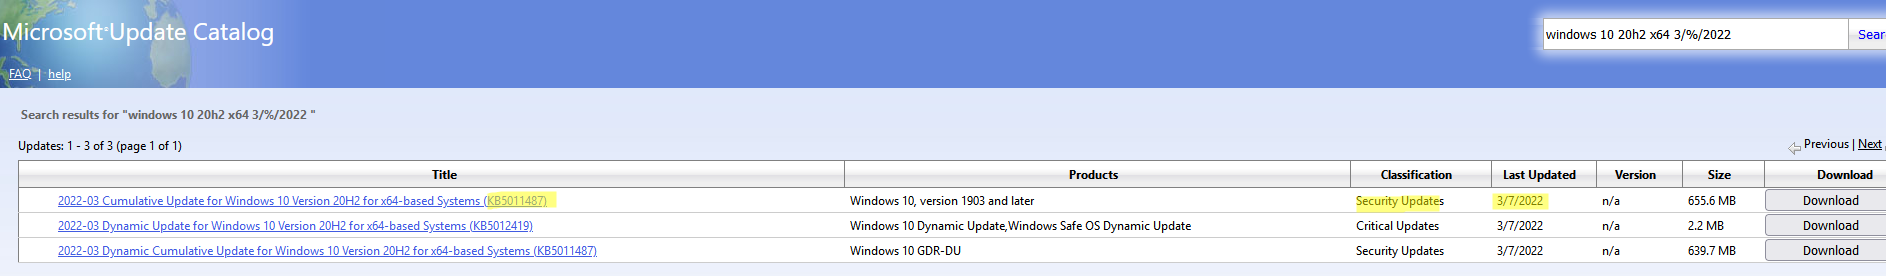 найти обновления для вашей версии WIndows в Microsoft Update Catalog